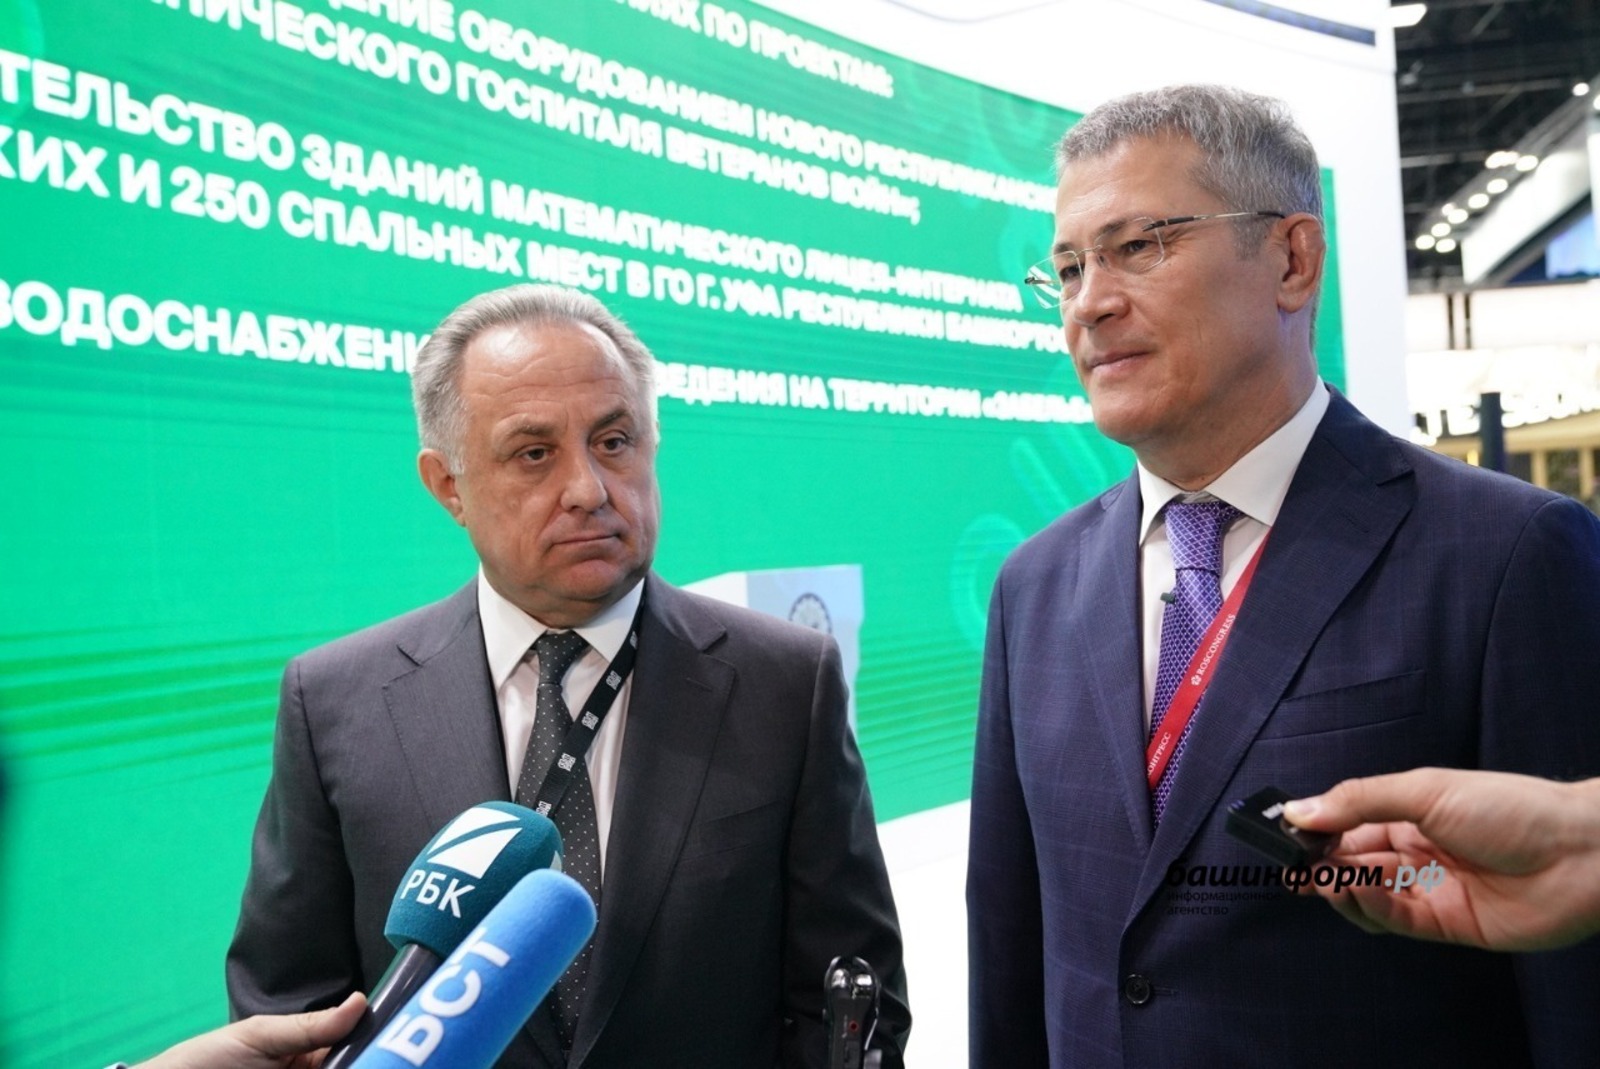 Башкирия подписала соглашение с ДОМ.РФ на получение займа в 8,4 млрд рублей для развития «Забелья»